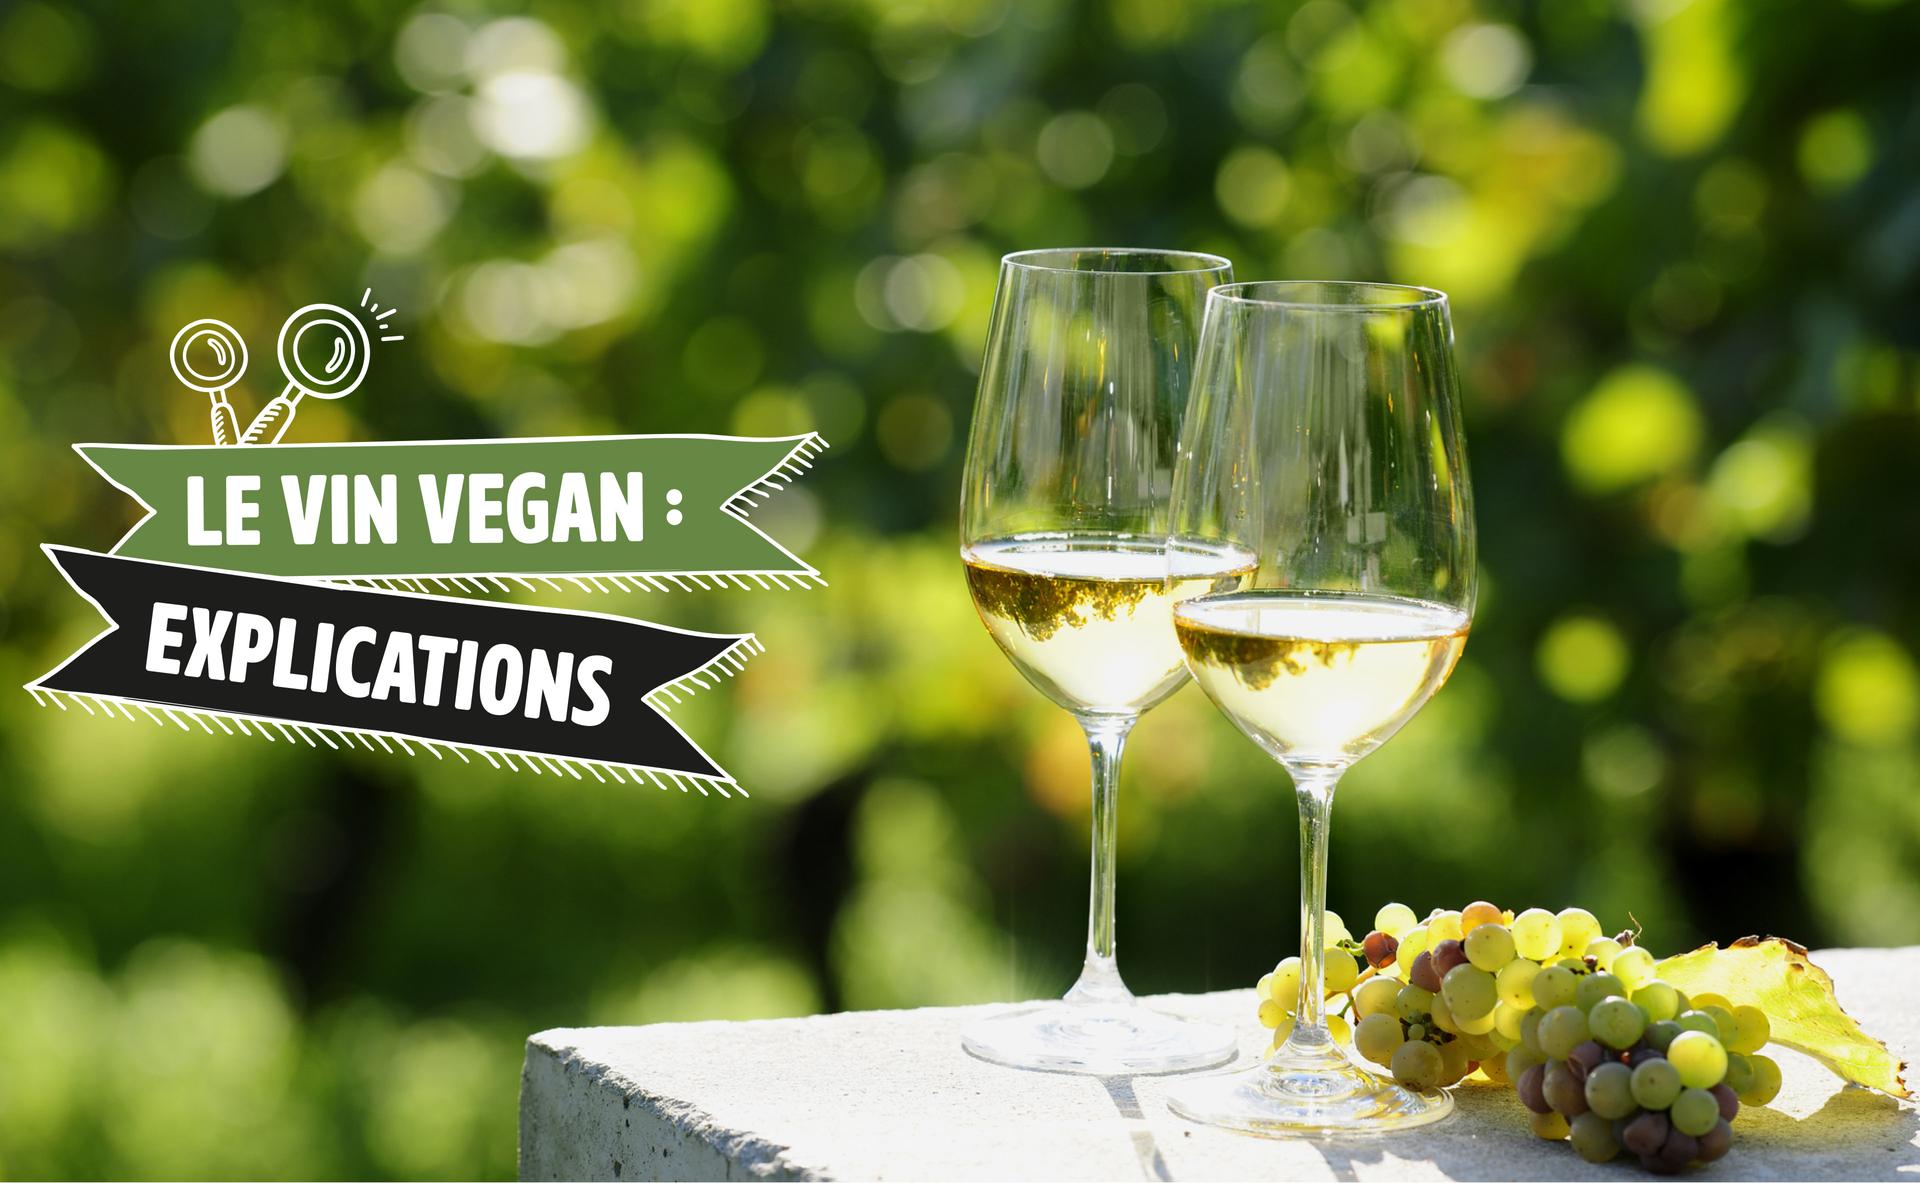 Le vin vegan : explications